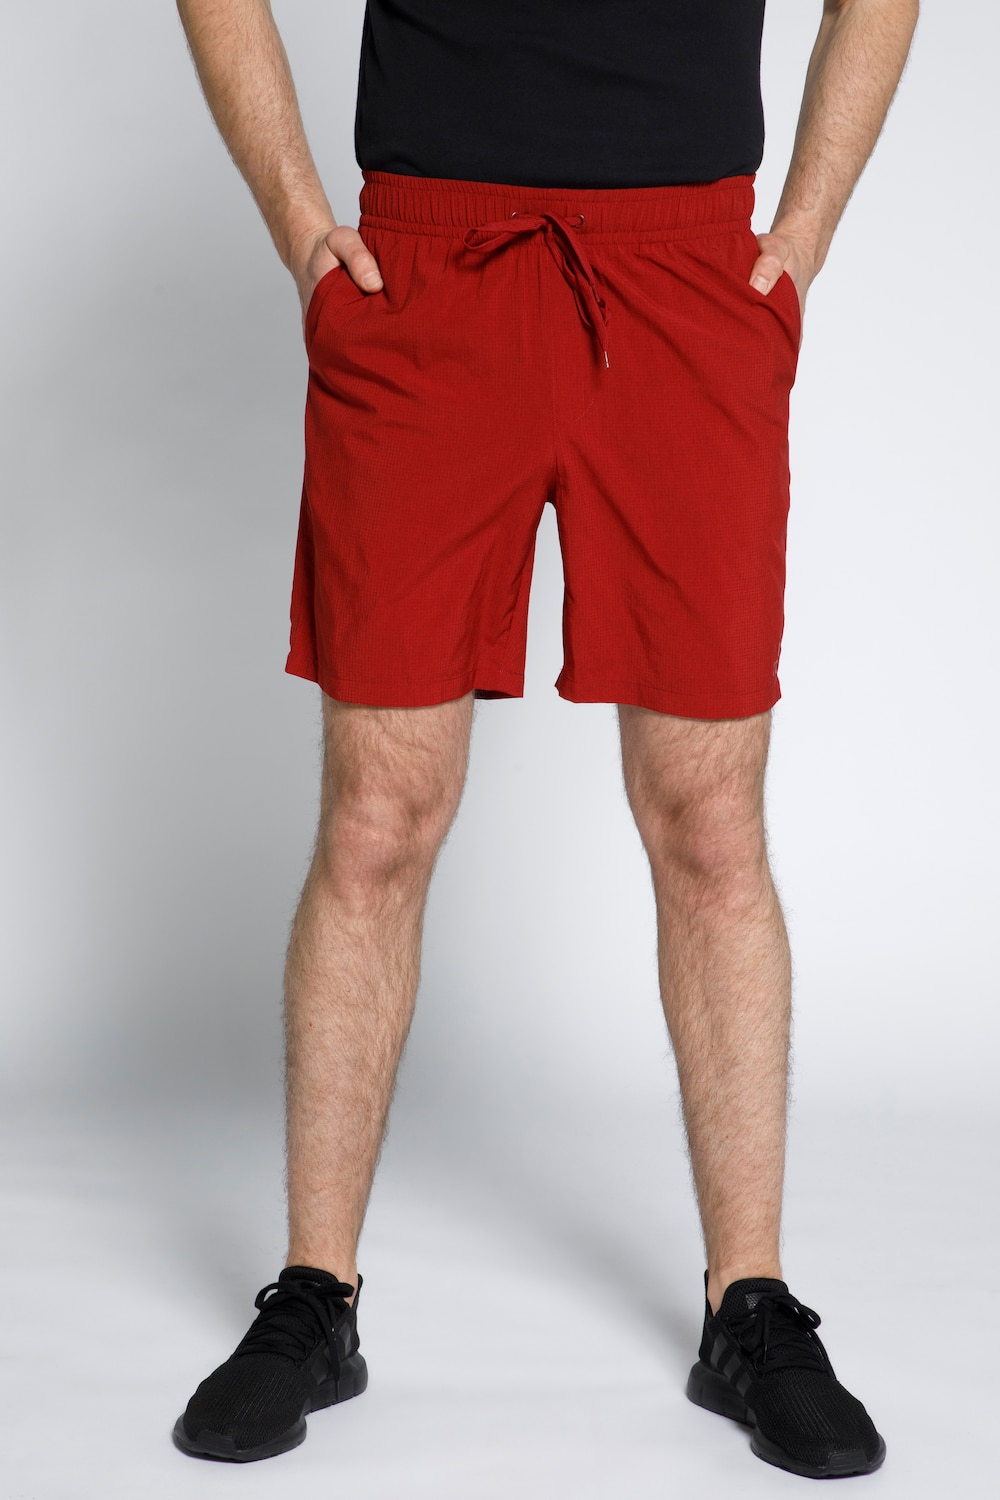 Grote Maten JAY-PI korte broek, Heren, rood, Maat: XXL, Polyester, JP1880